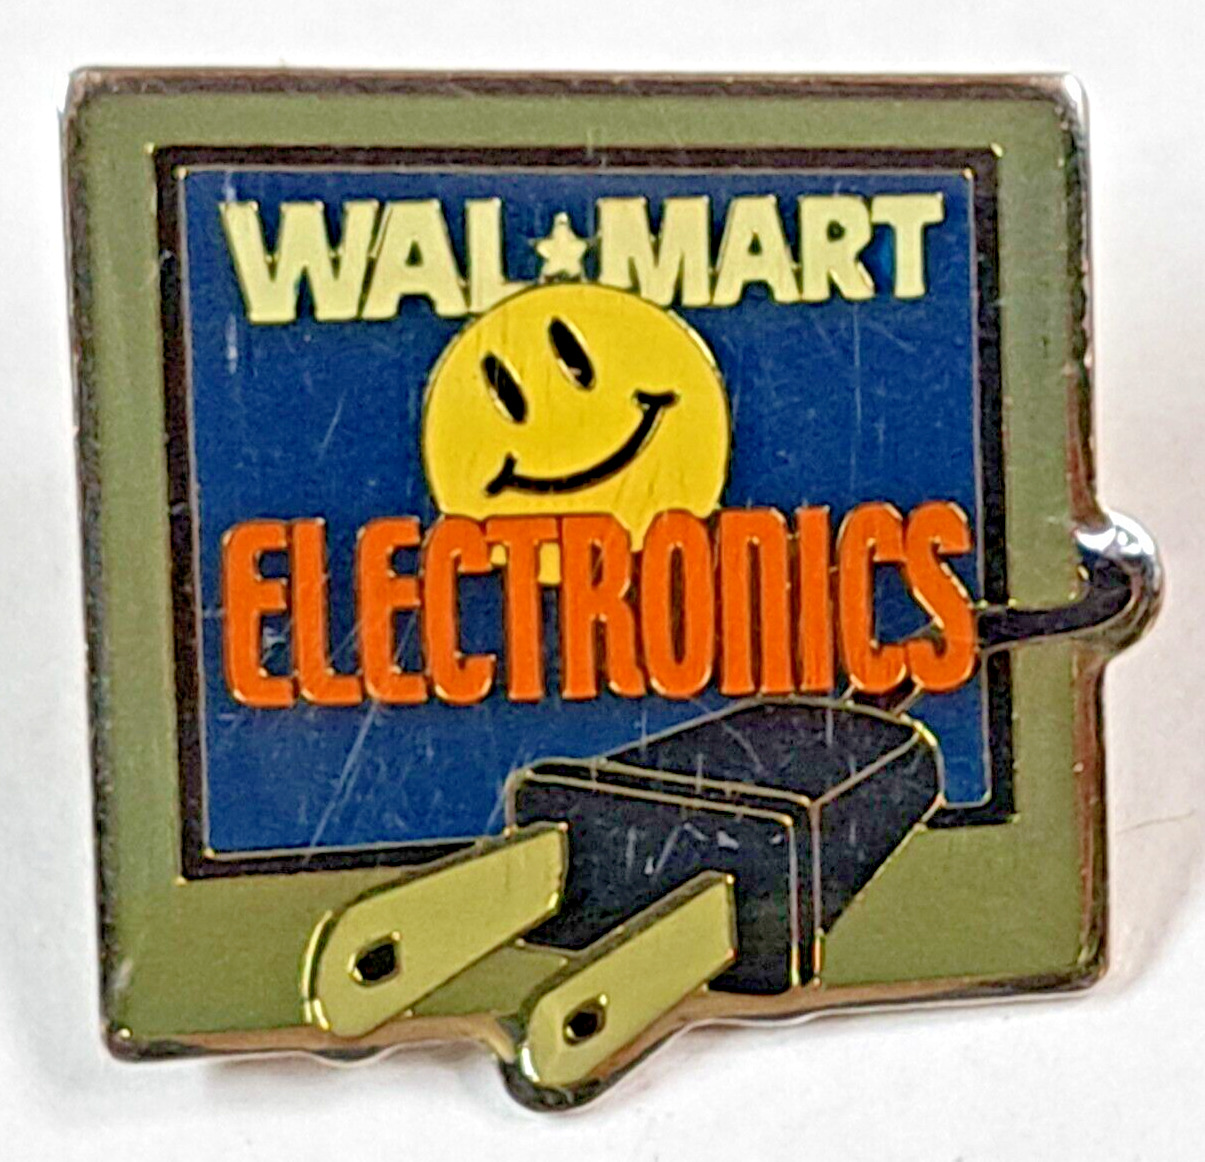 Vintage Wal-Mart Electronics pin pinback